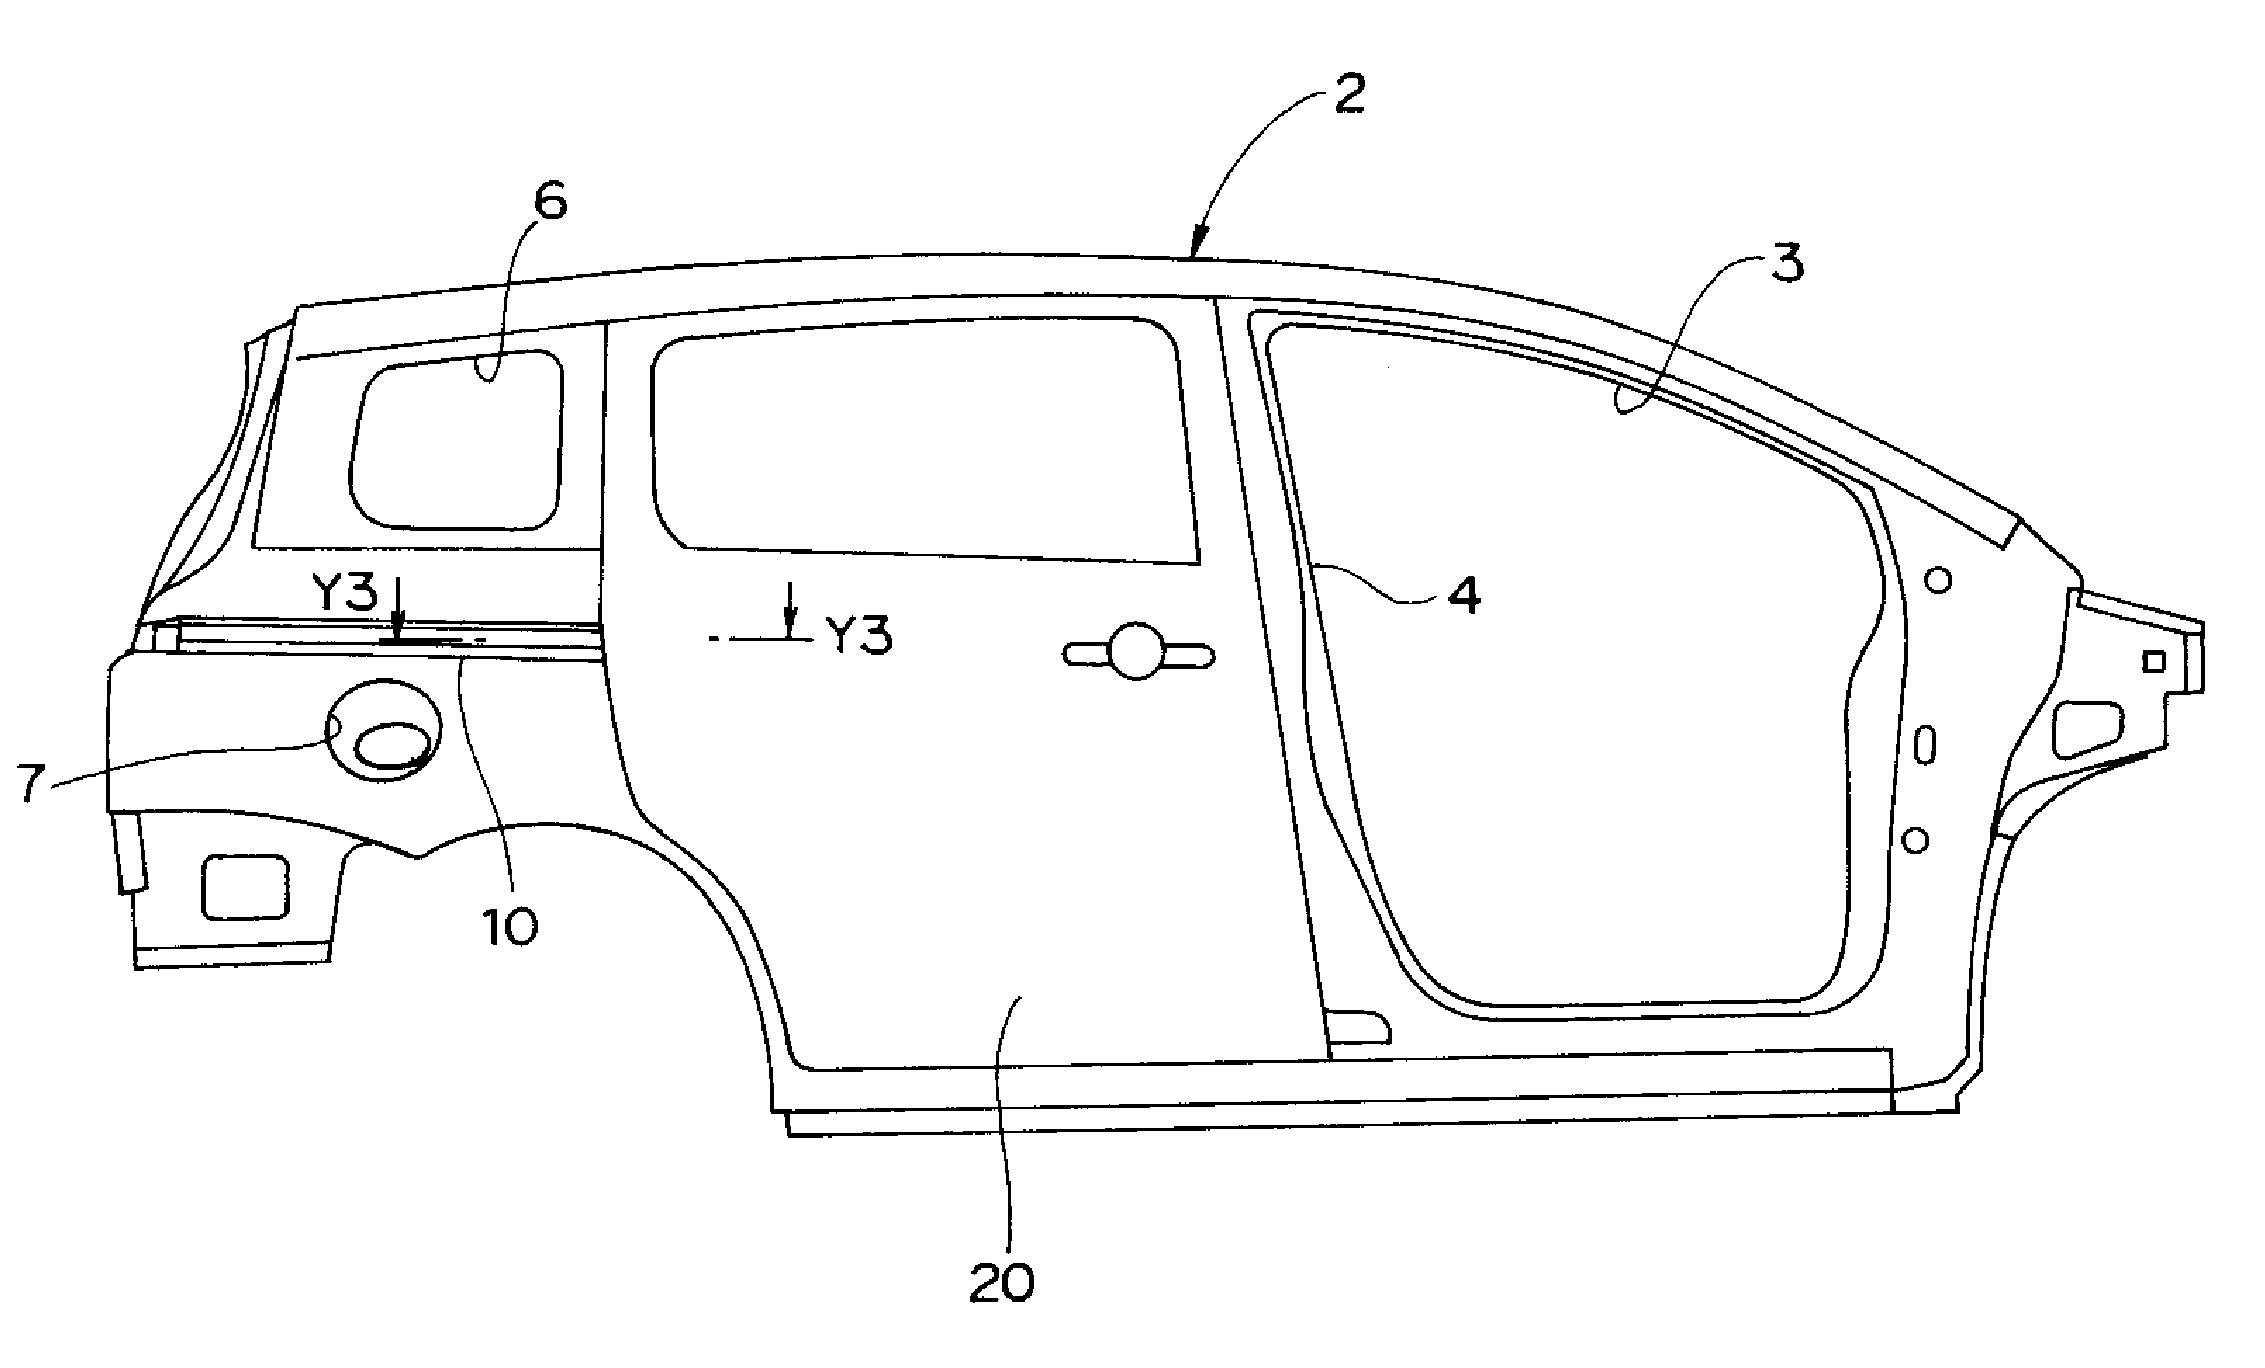 Slide door structure of vehicle